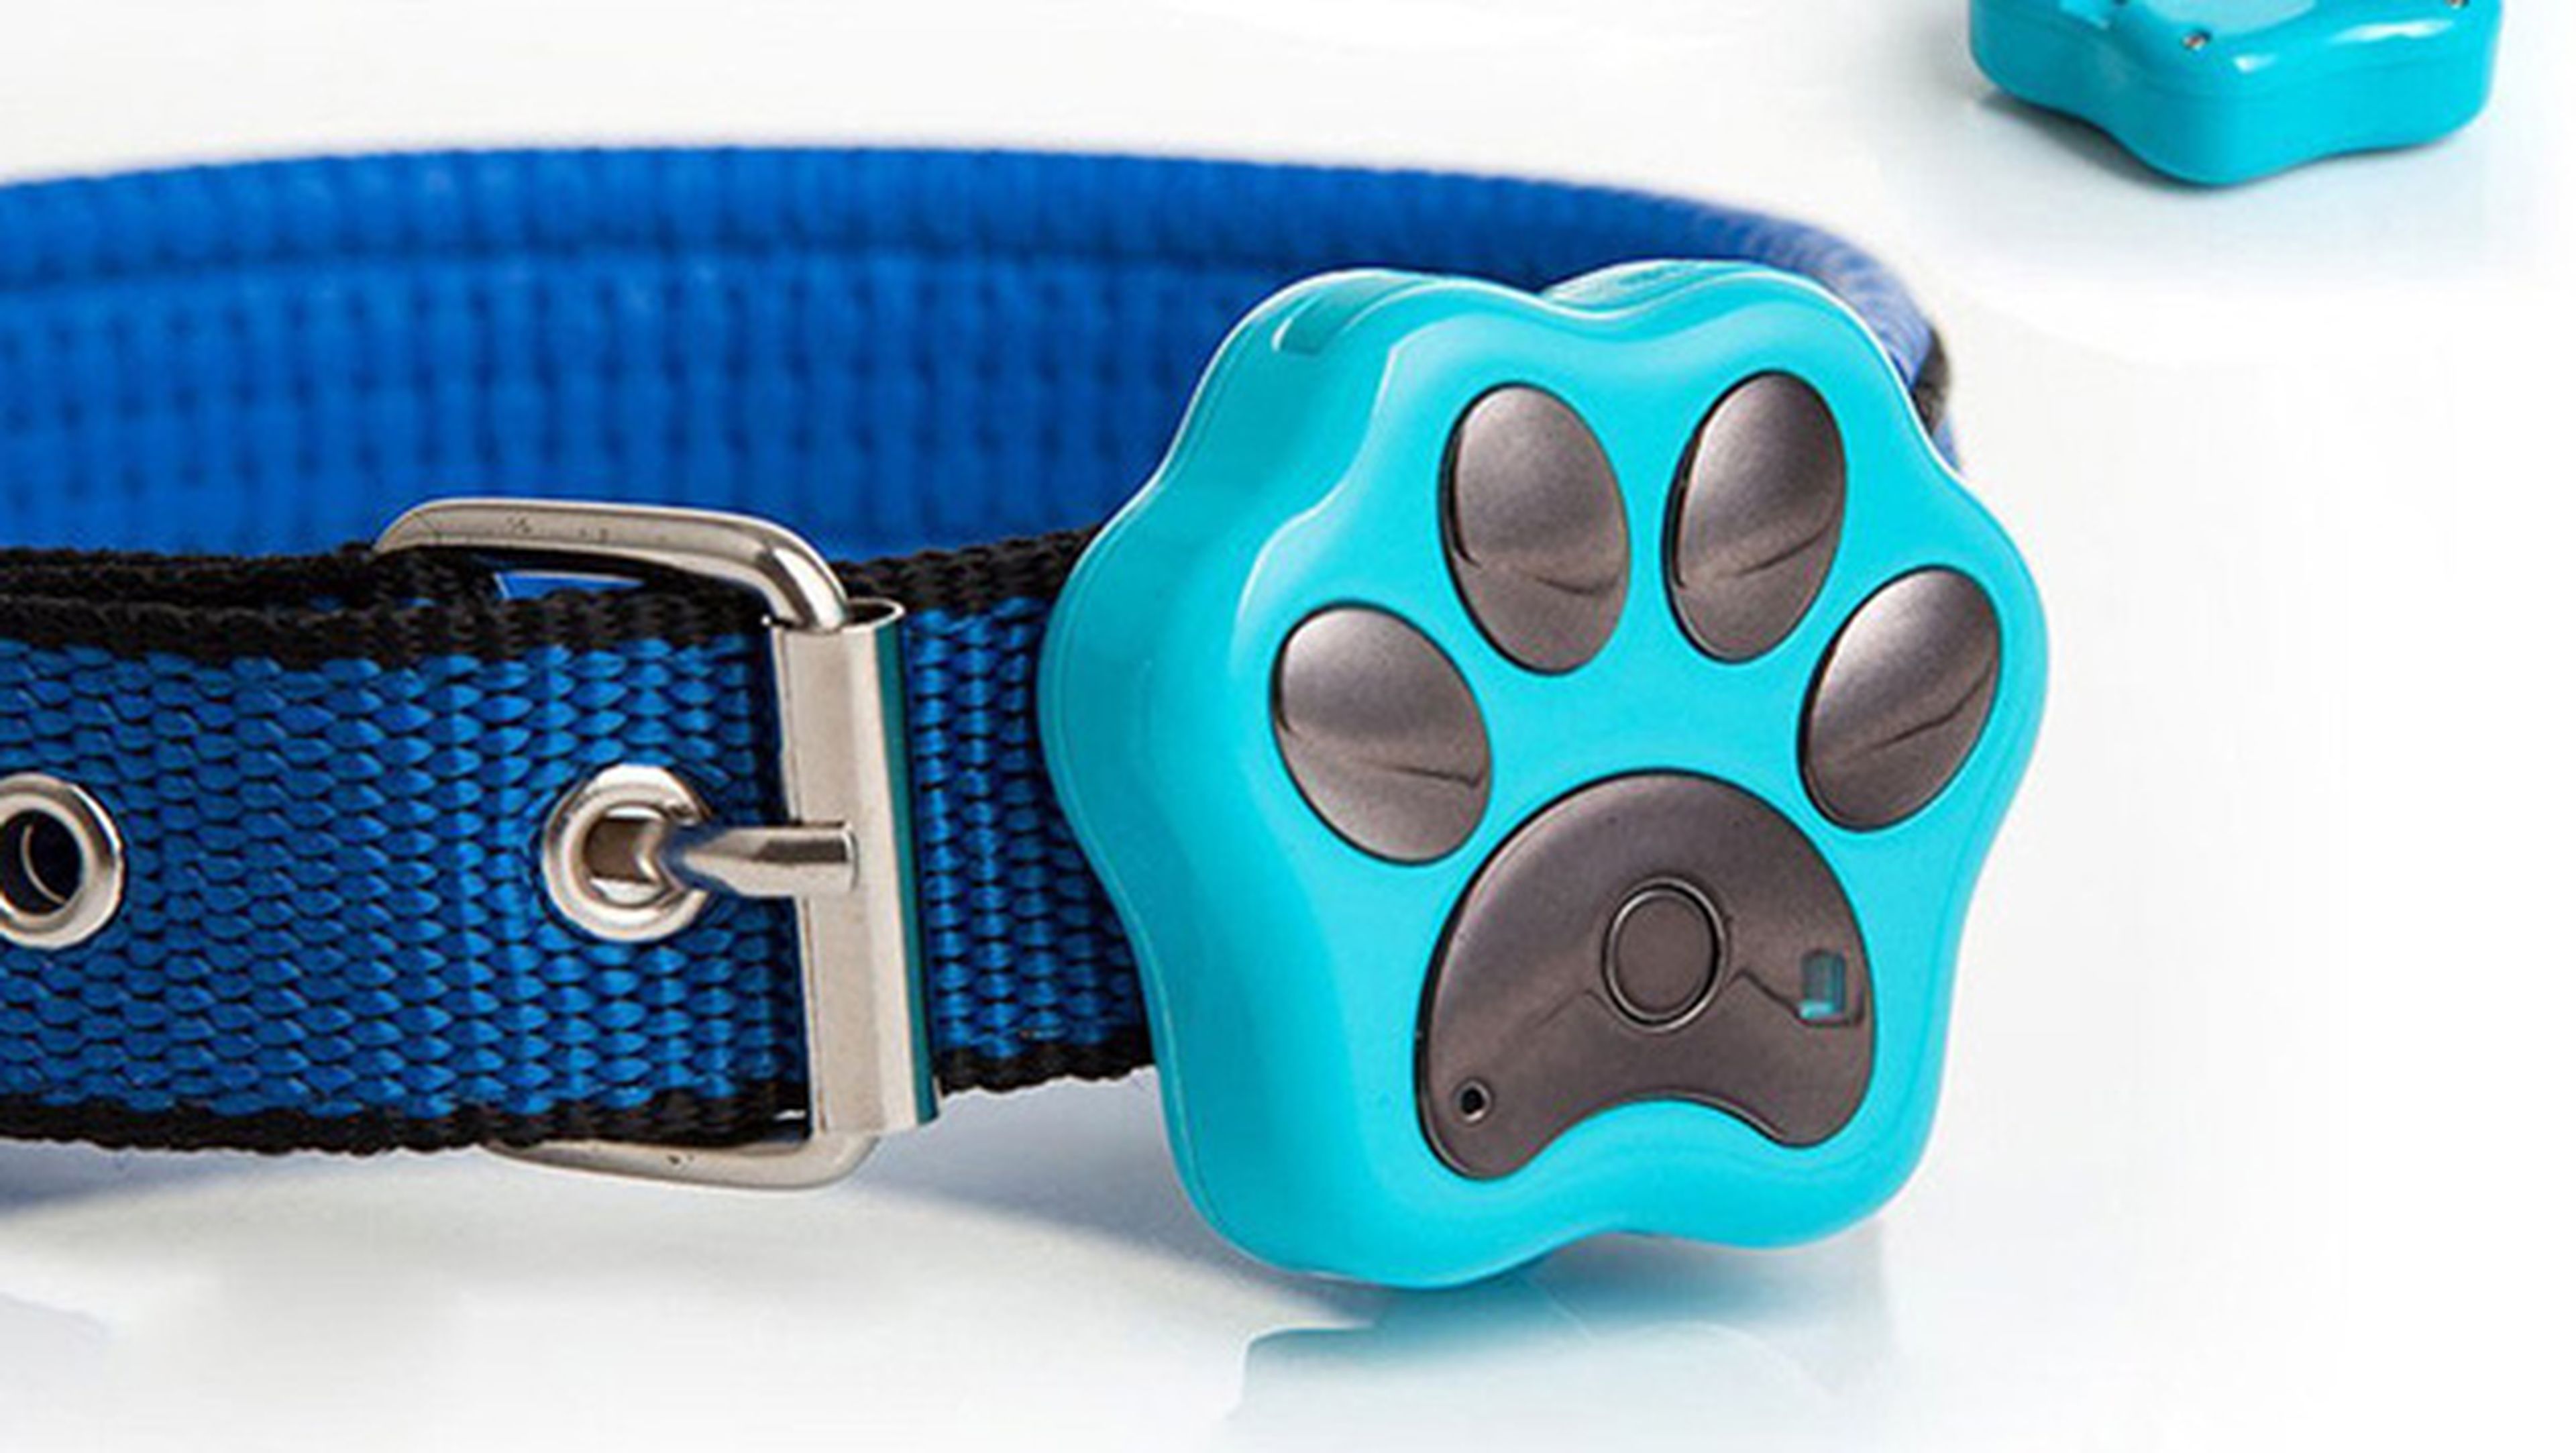 Los 5 mejores collares GPS para tu perro, gato y demás mascotas